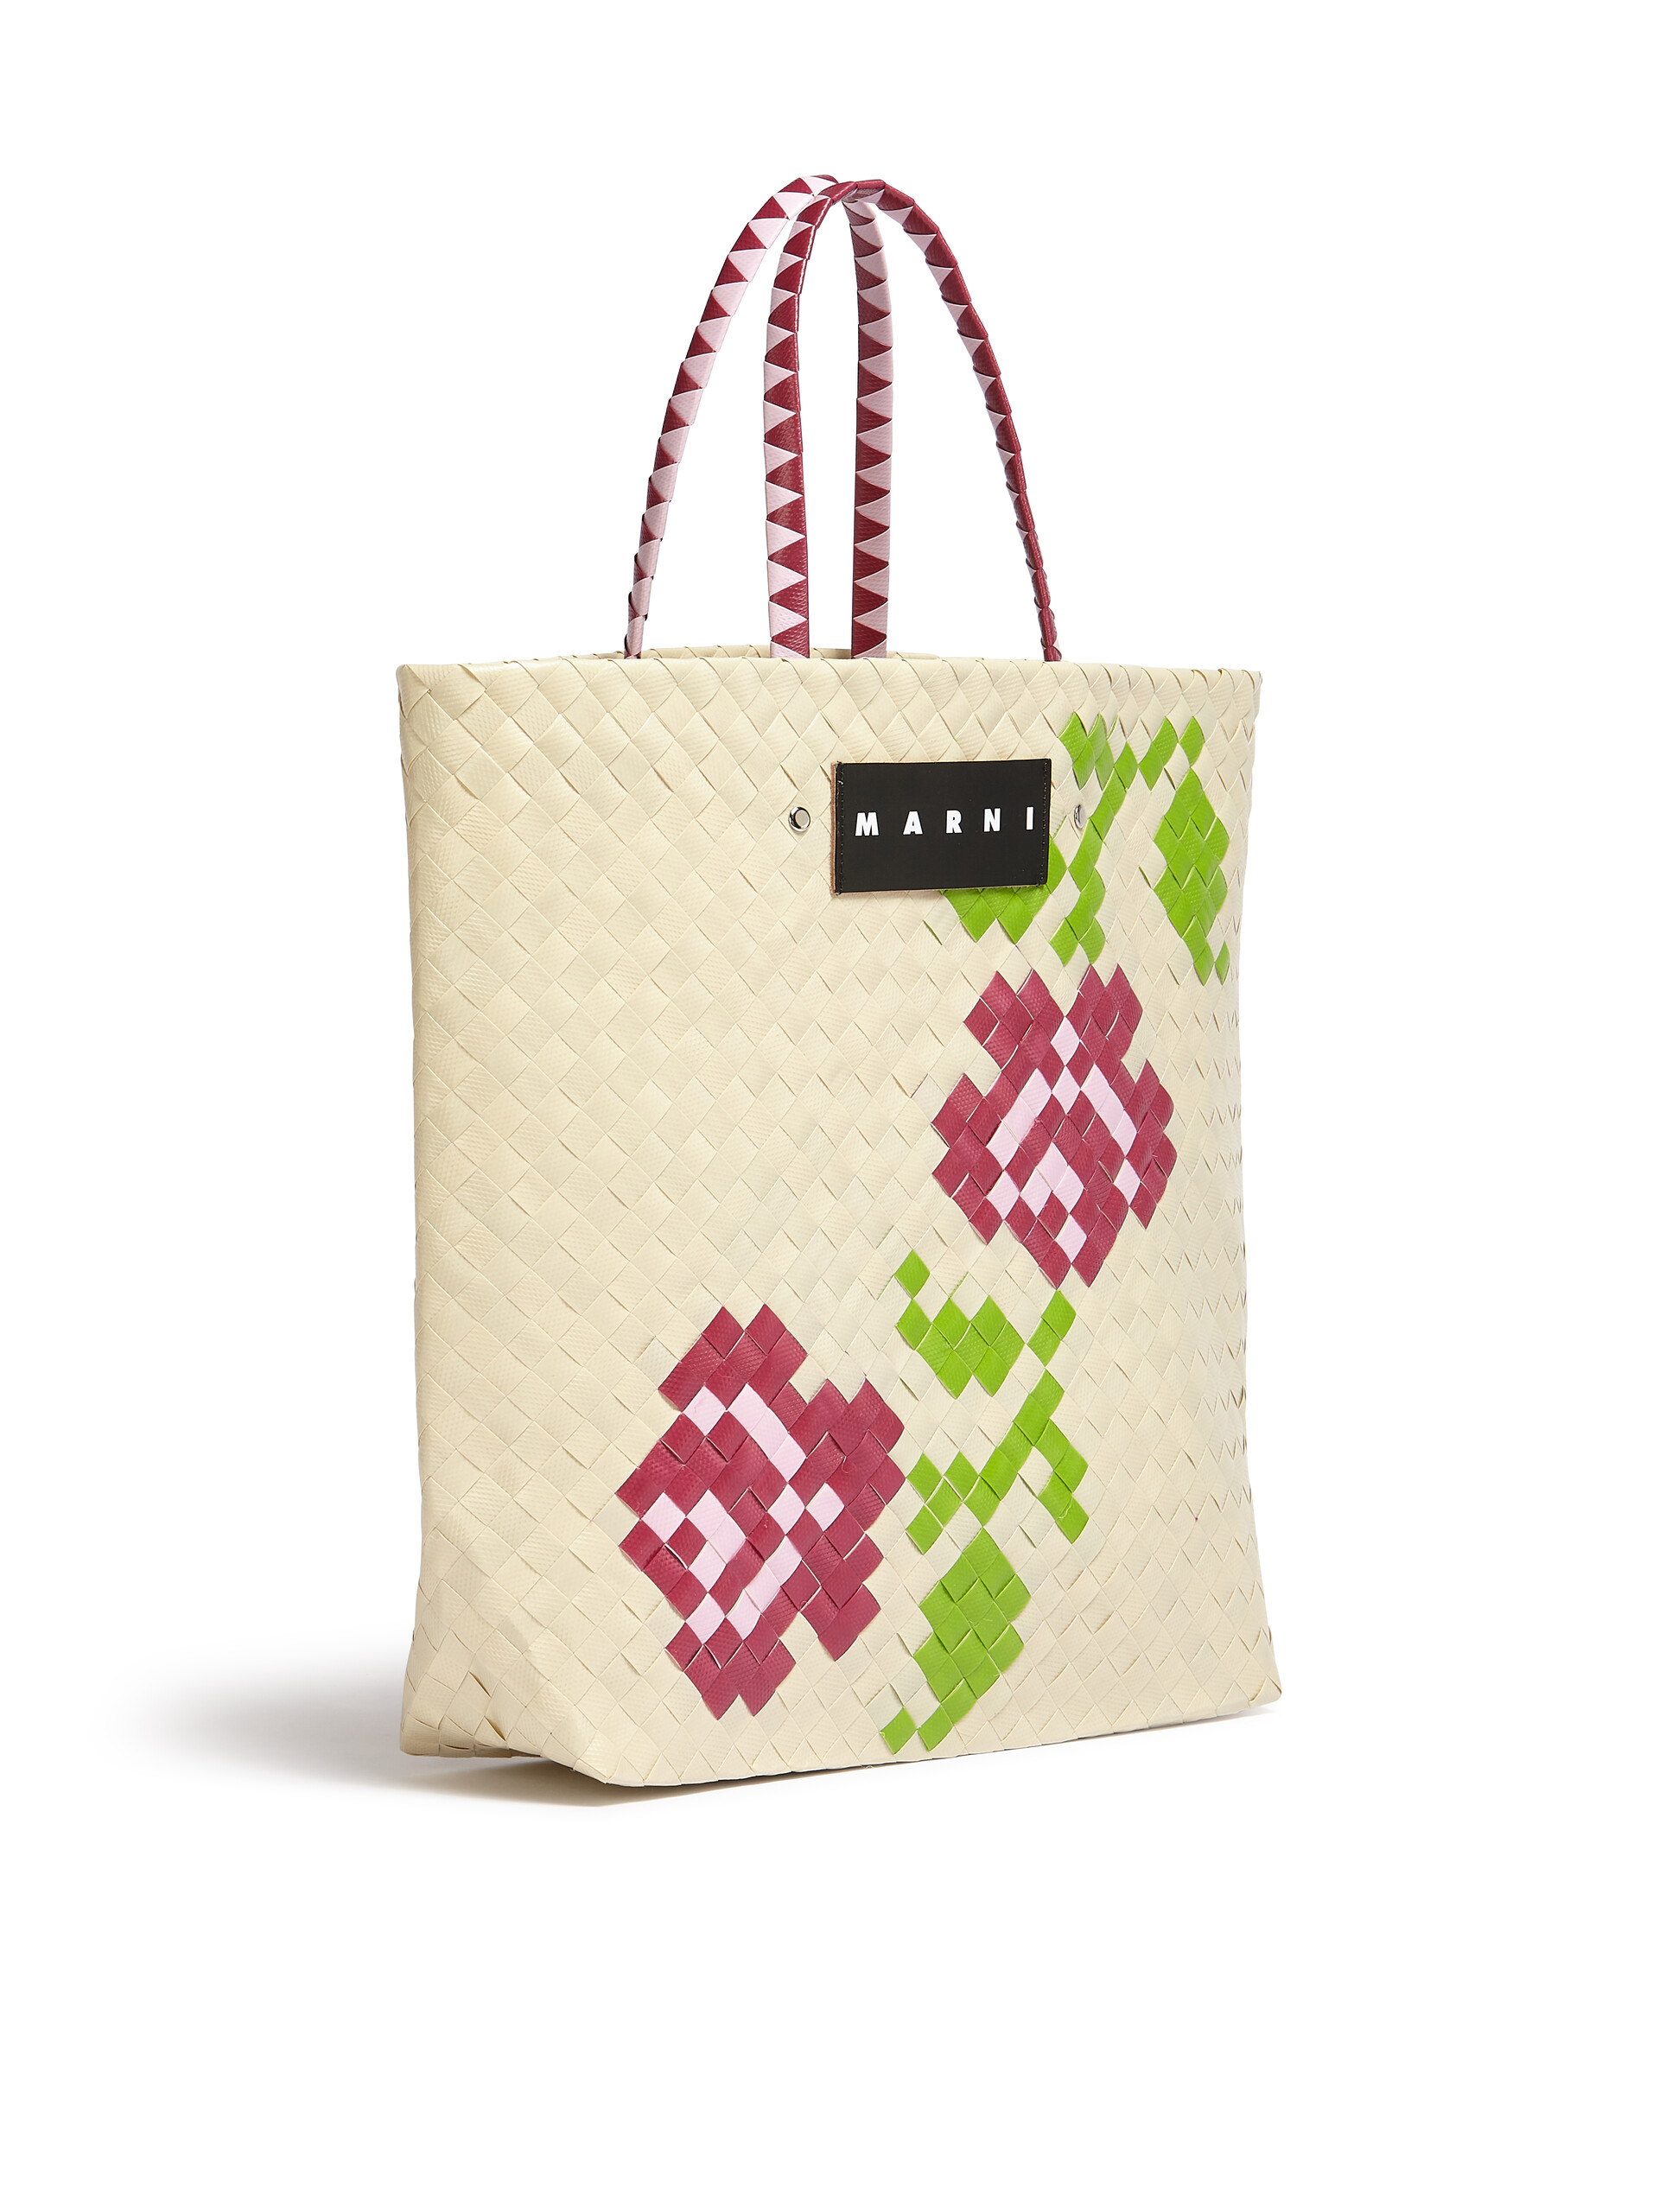 MARNI MARKET BORA medium bag in white flower motif - Bags - Image 2